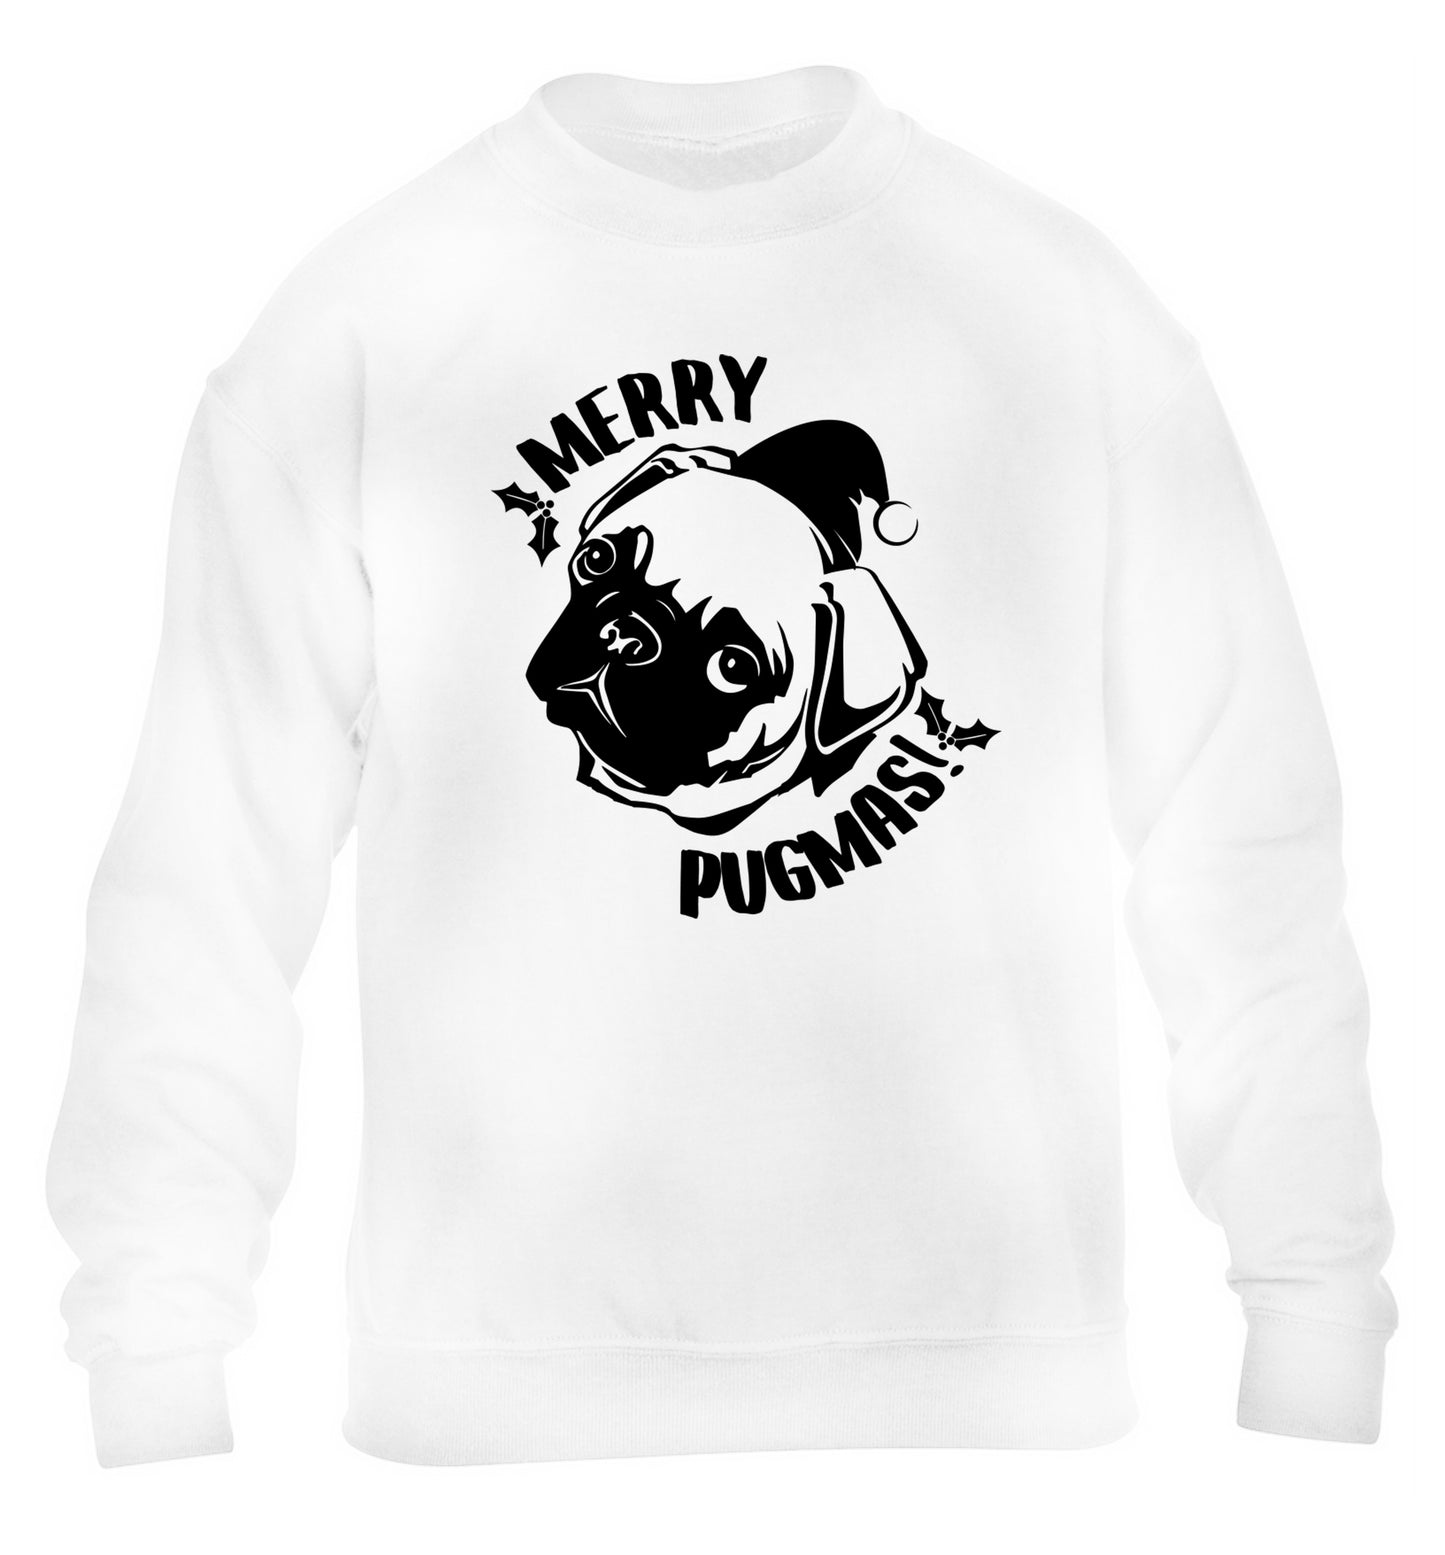 Merry Pugmas children's white sweater 12-14 Years